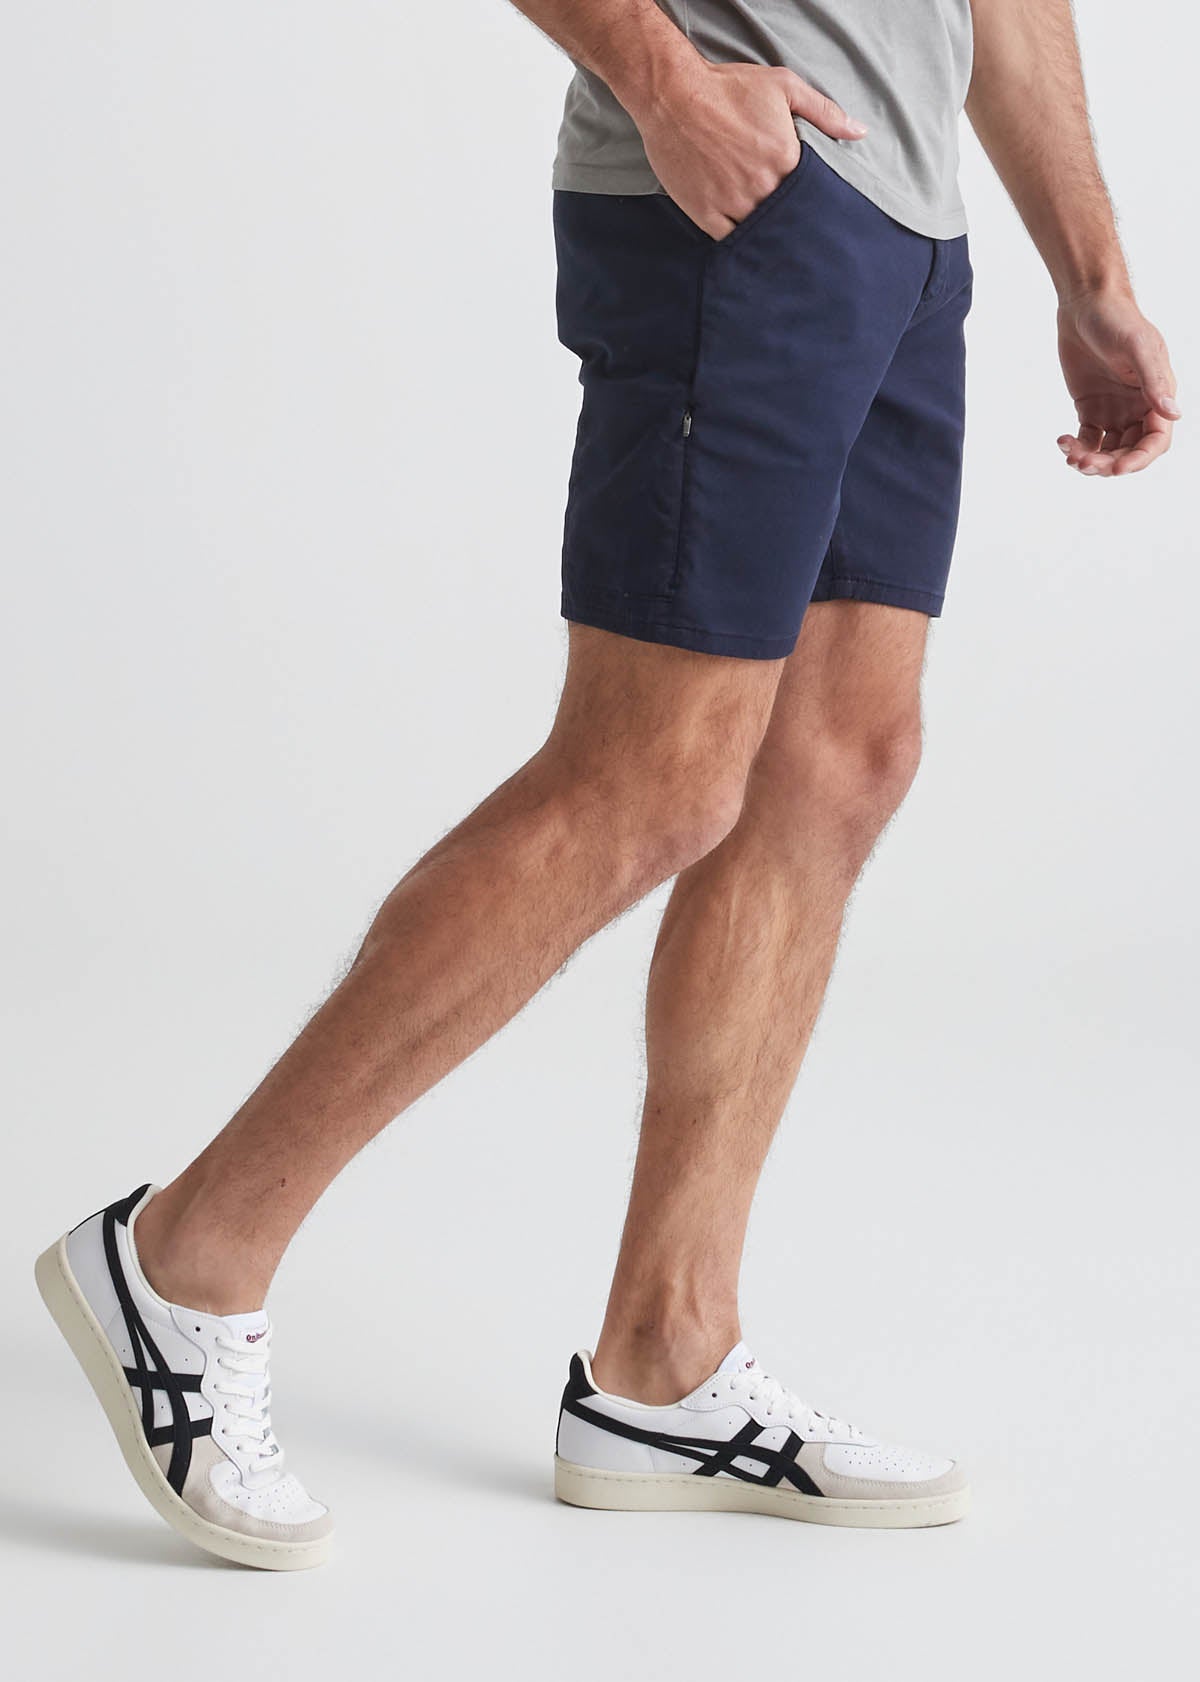 mens dark blue slim fit lightweight shorts side 7" inseam